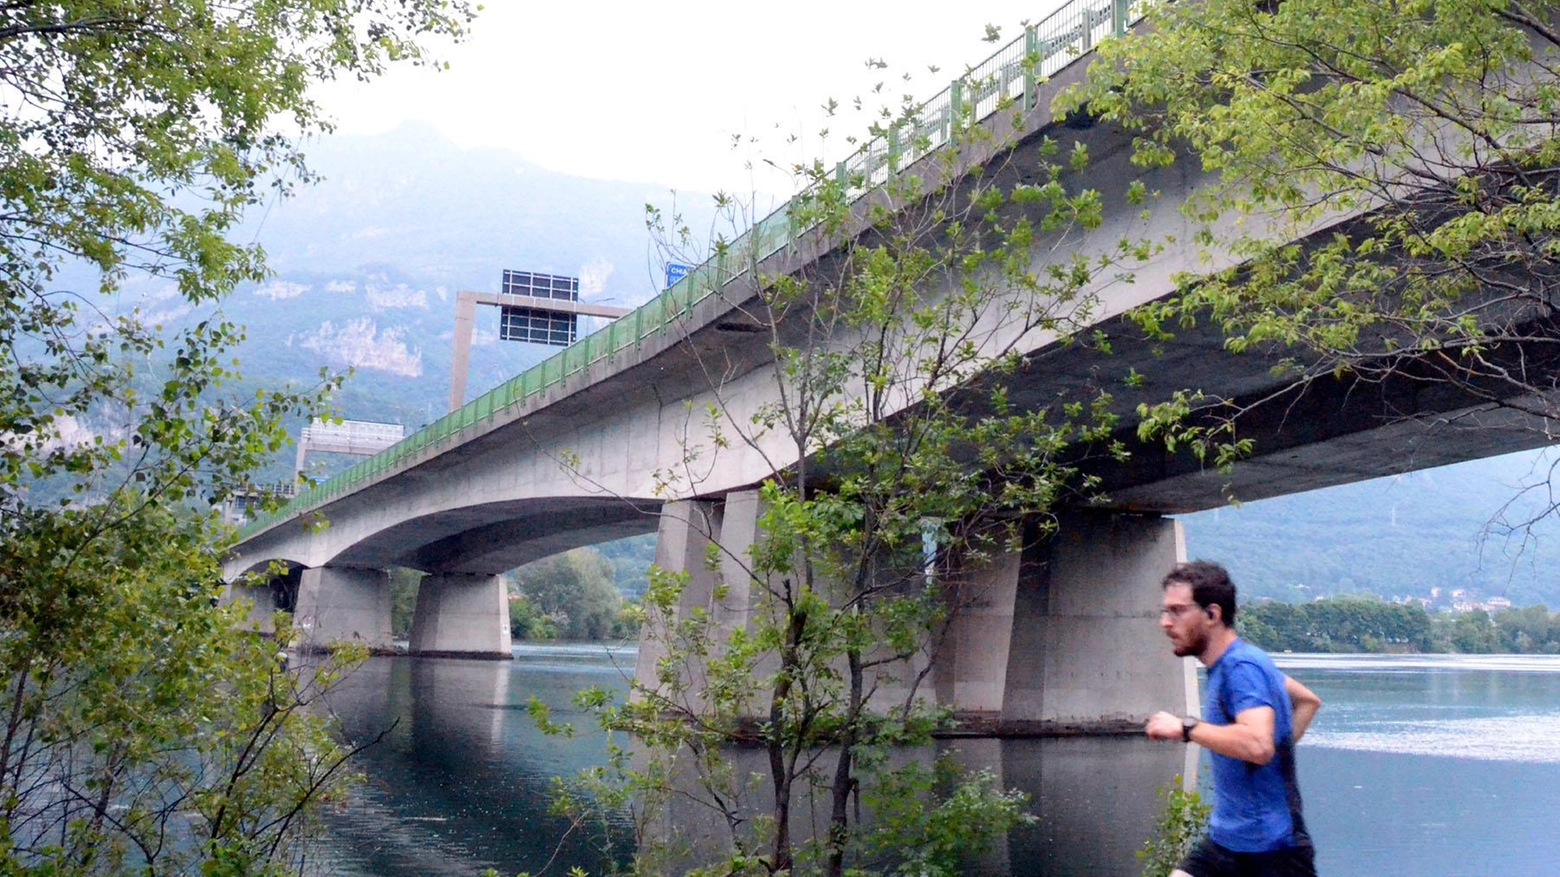 Quarto ponte sul fiume Adda ancora in bilico